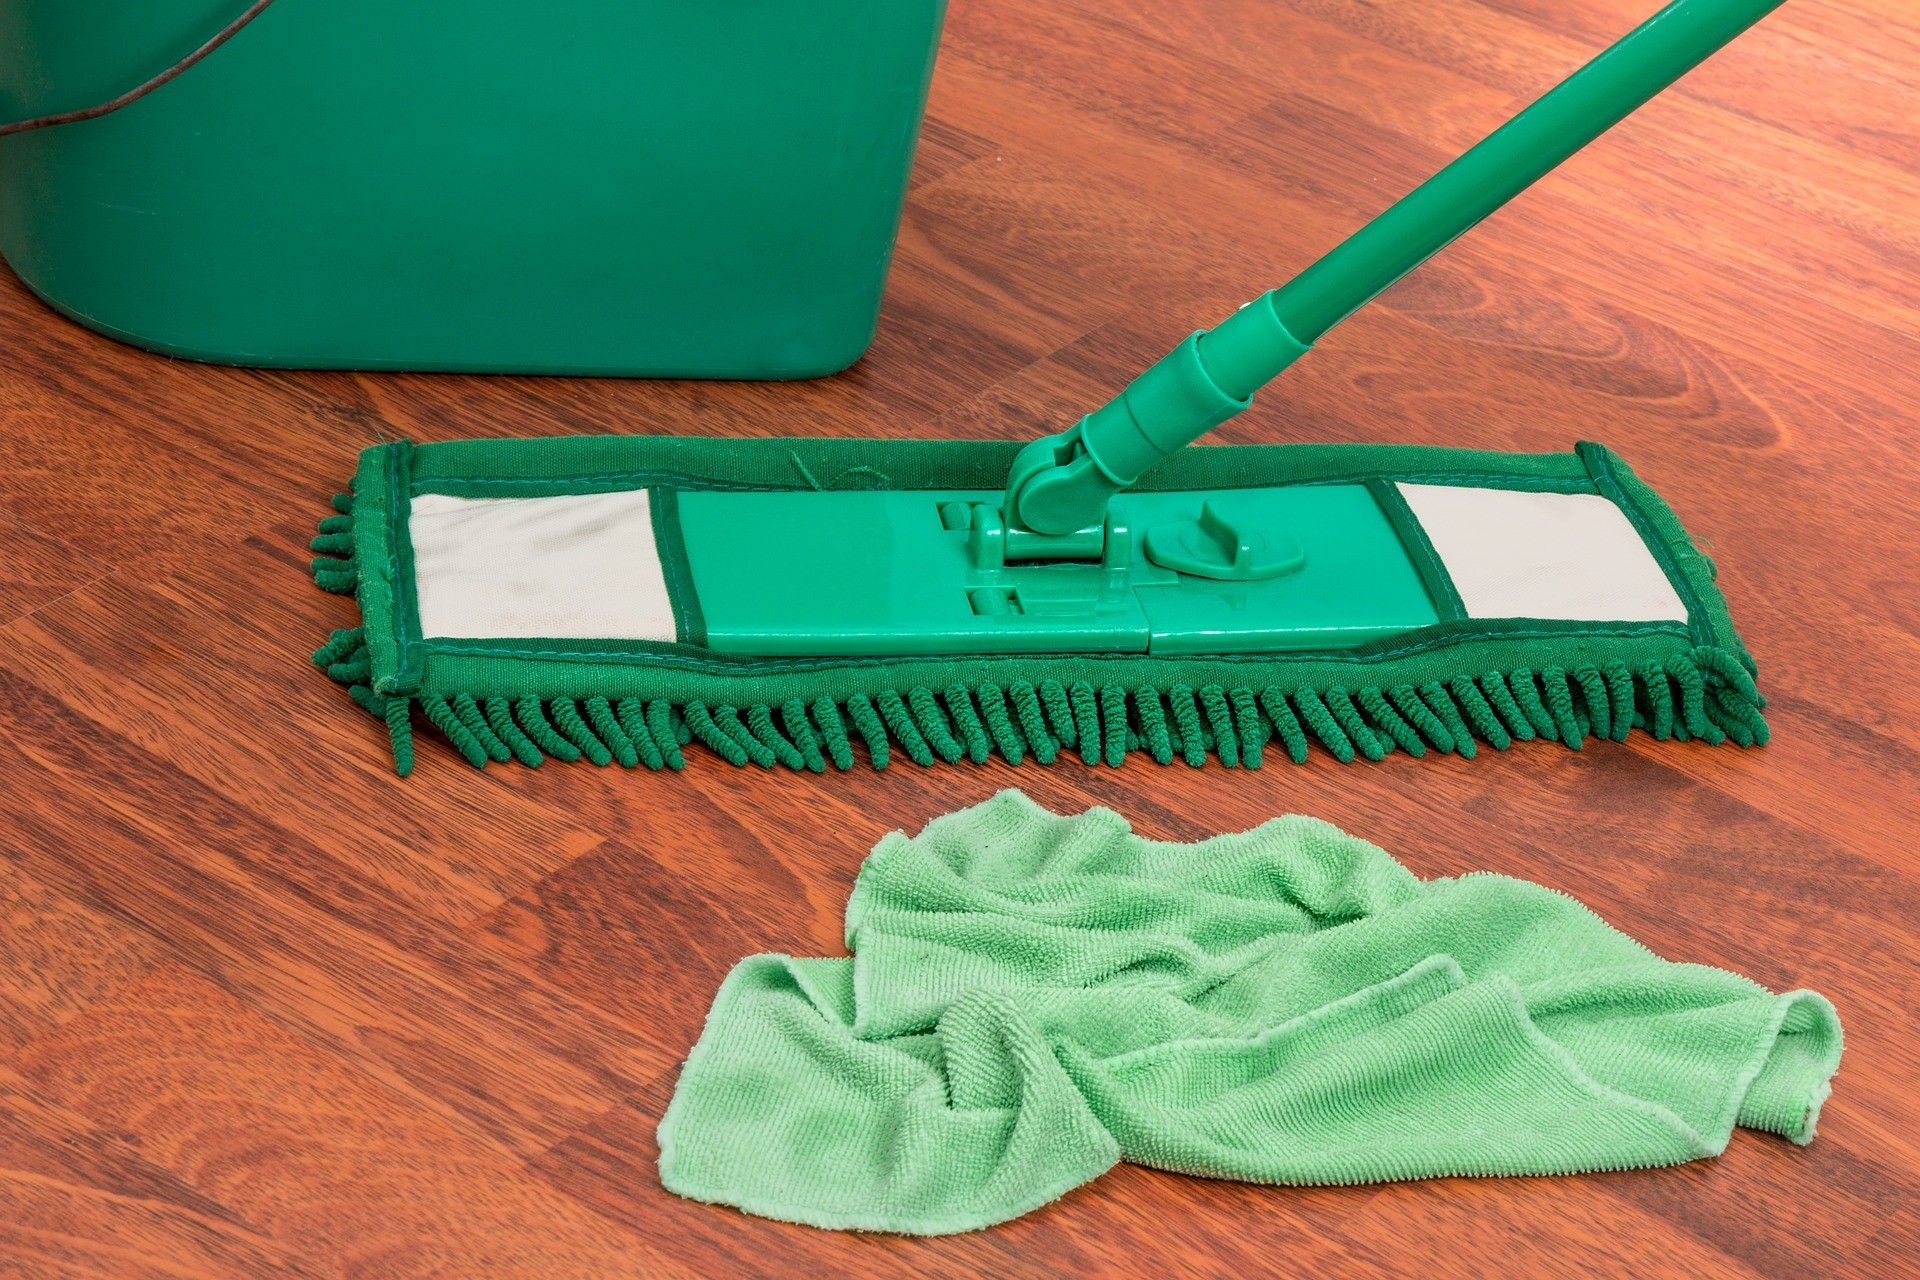 Как правильно мыть полы в квартире: общие советы и рекомендации для разных покрытий